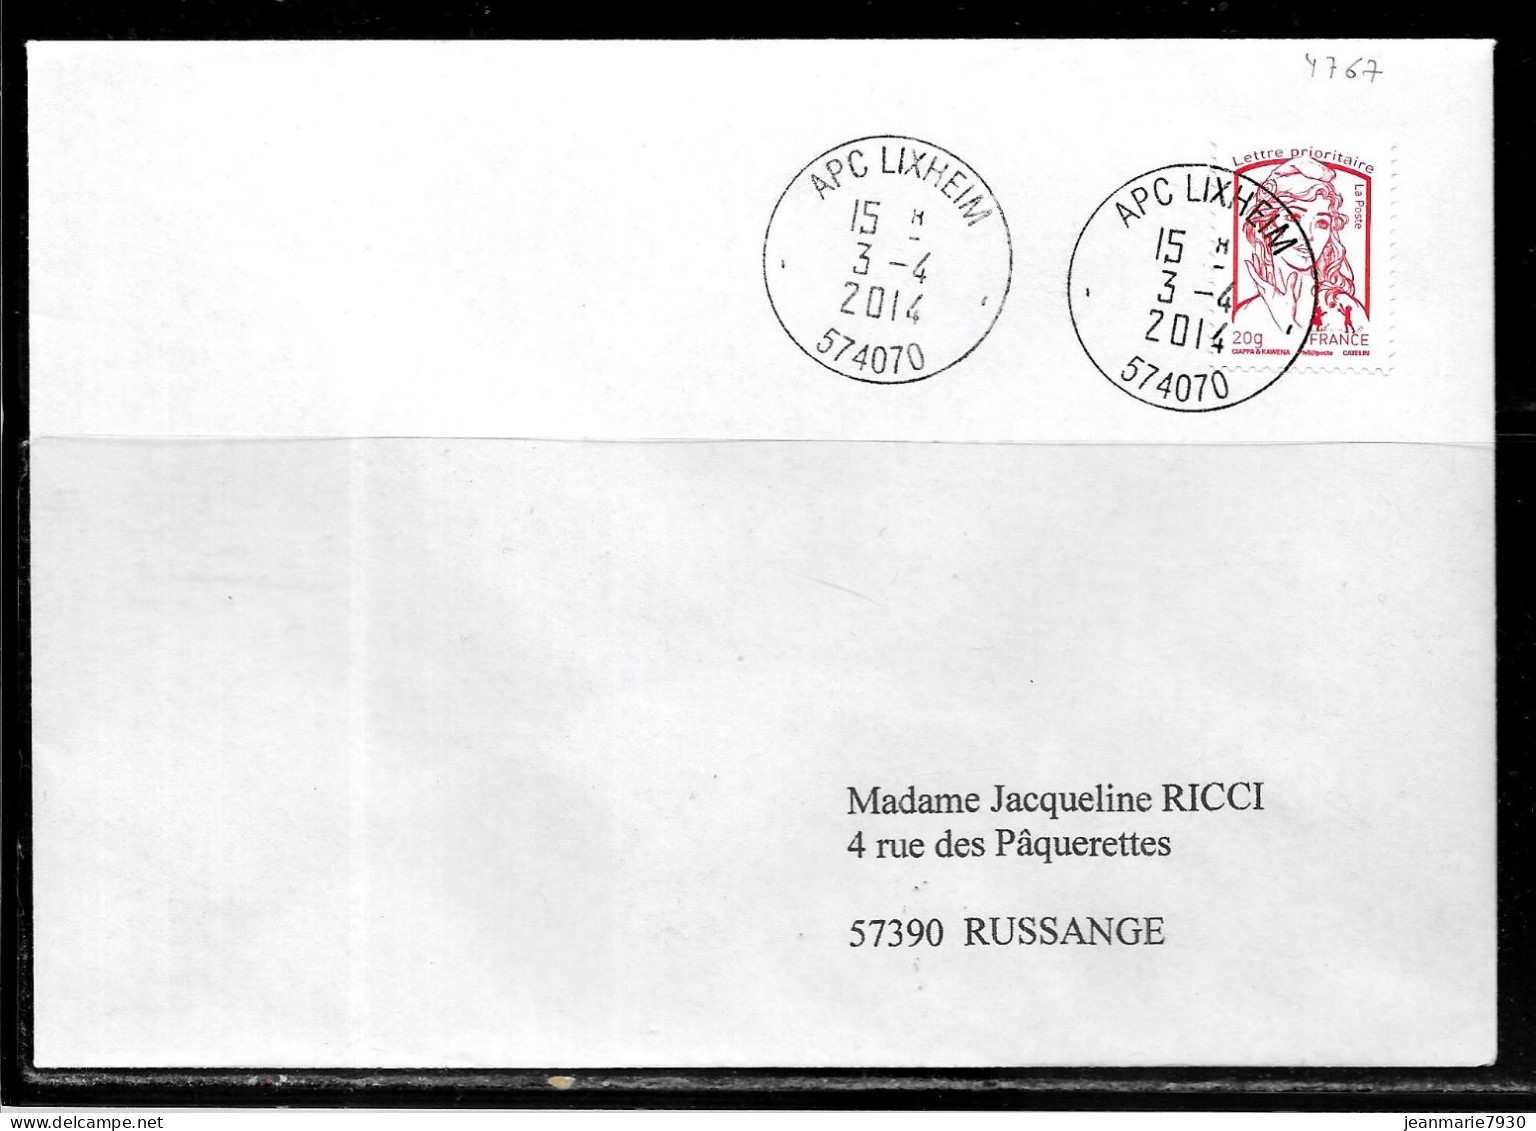 K106 - MARIANNE DE CIAPPA SUR LETTRE DE APC LIXHEIM DU 03/04/14 - 1961-....